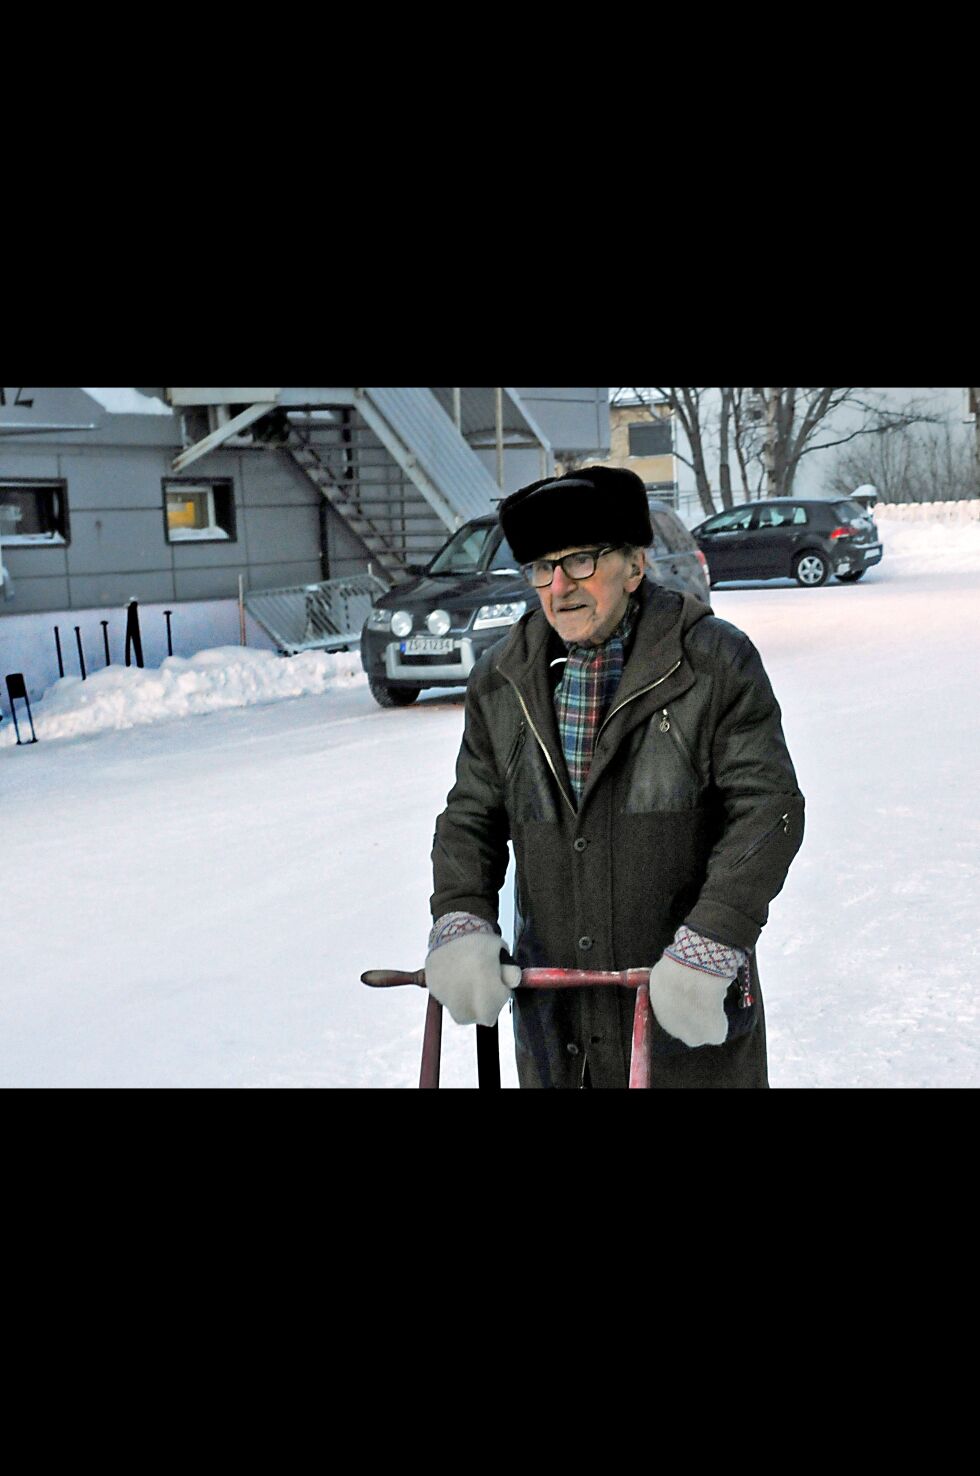 90 år gamle Oskar Hansen i Kirkenes lovpriser sparken, som gjør det lett for ham å dra til byen og handle, uten å styre med bilen.
 Foto: Hallgeir Henriksen